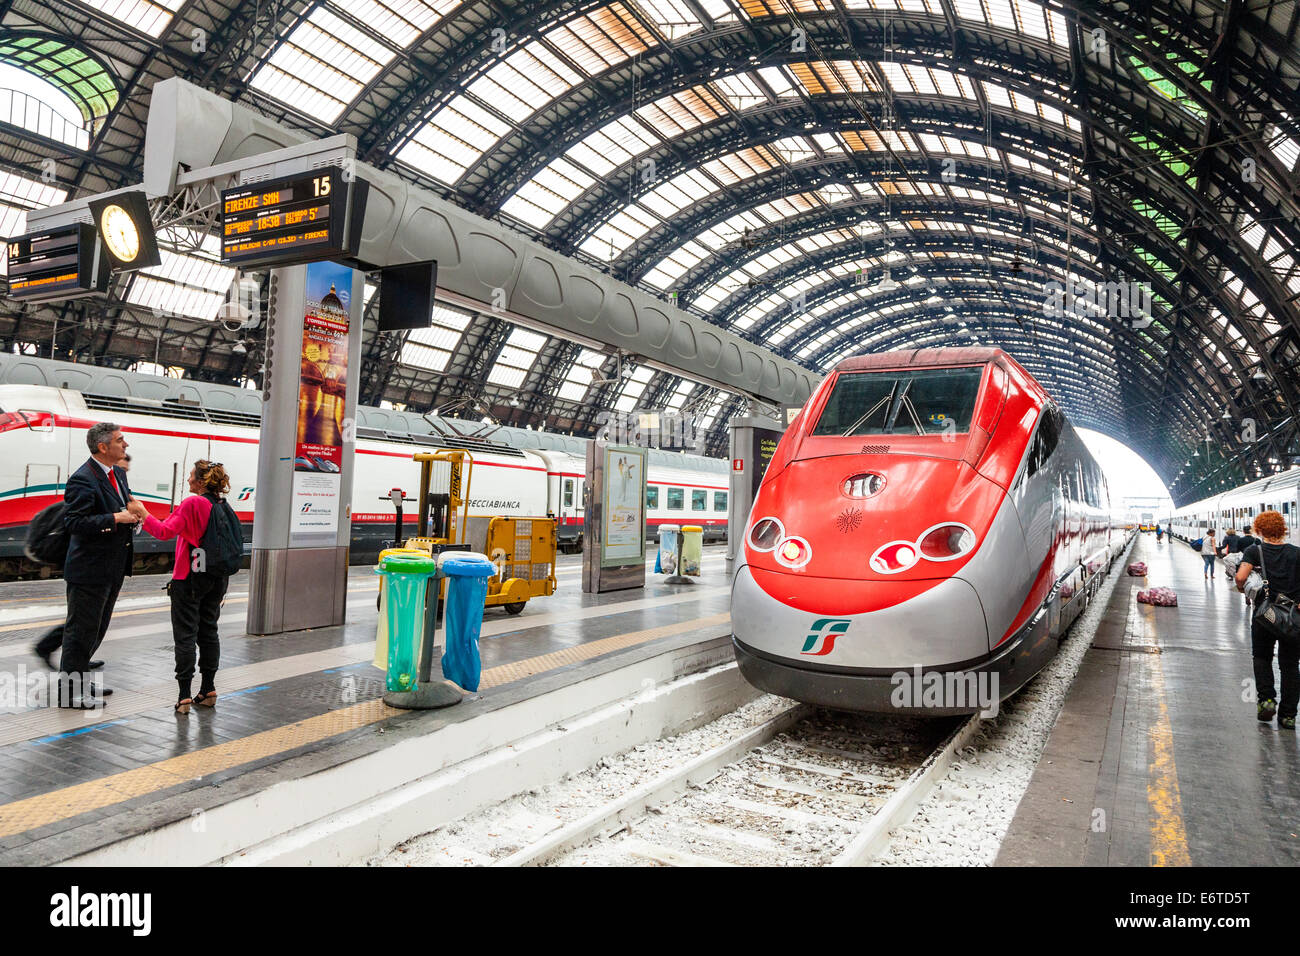 Freccia Rossa train à grande vitesse dans la gare centrale de Milan - Stazione Centrale de Milan - Italie Banque D'Images